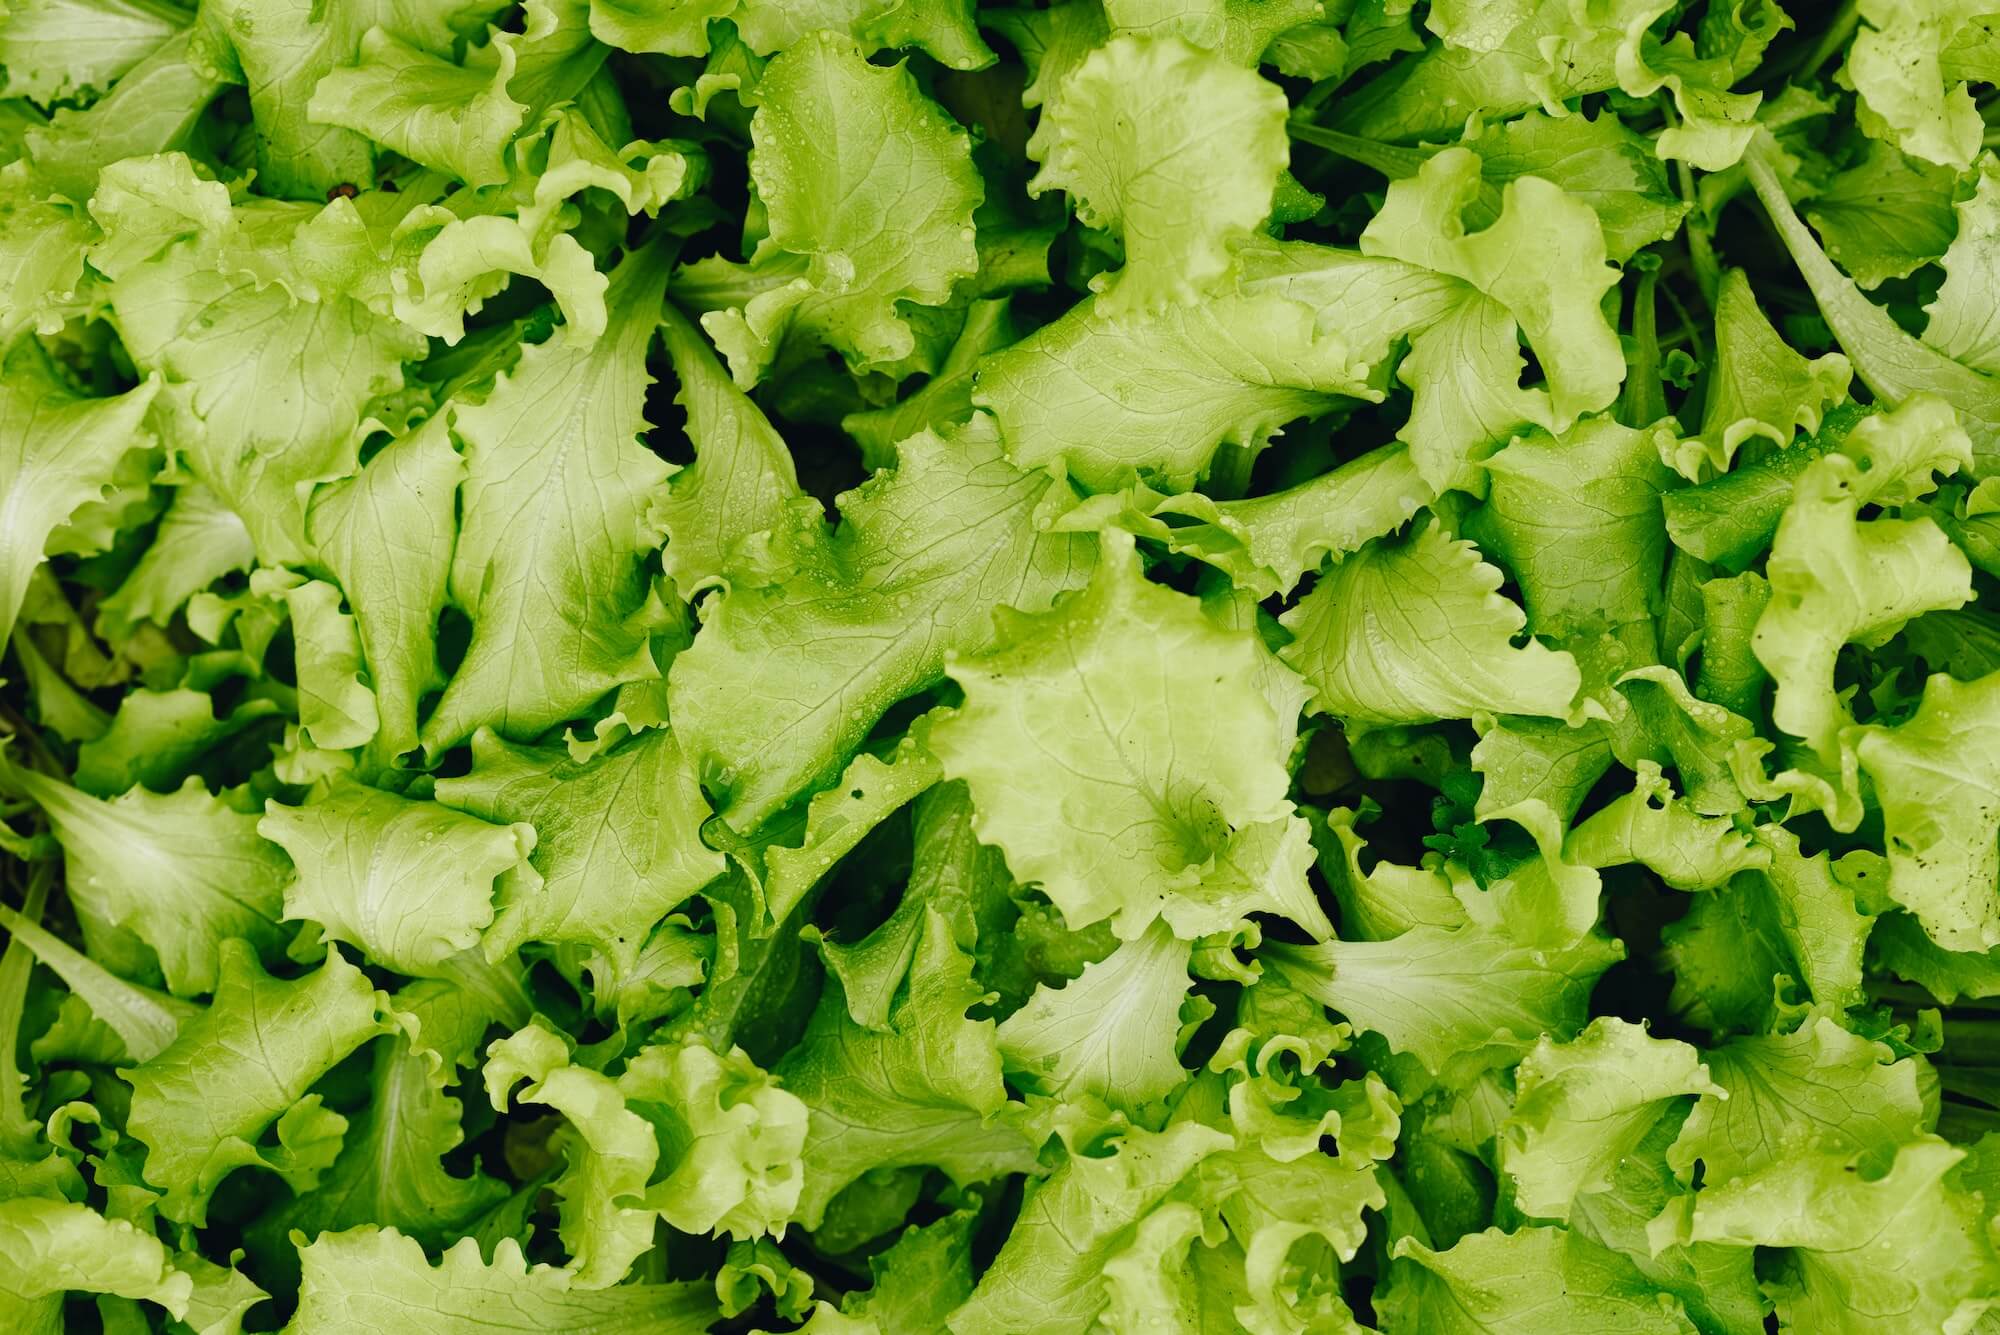 Lettuce seeds grown into full lettuce